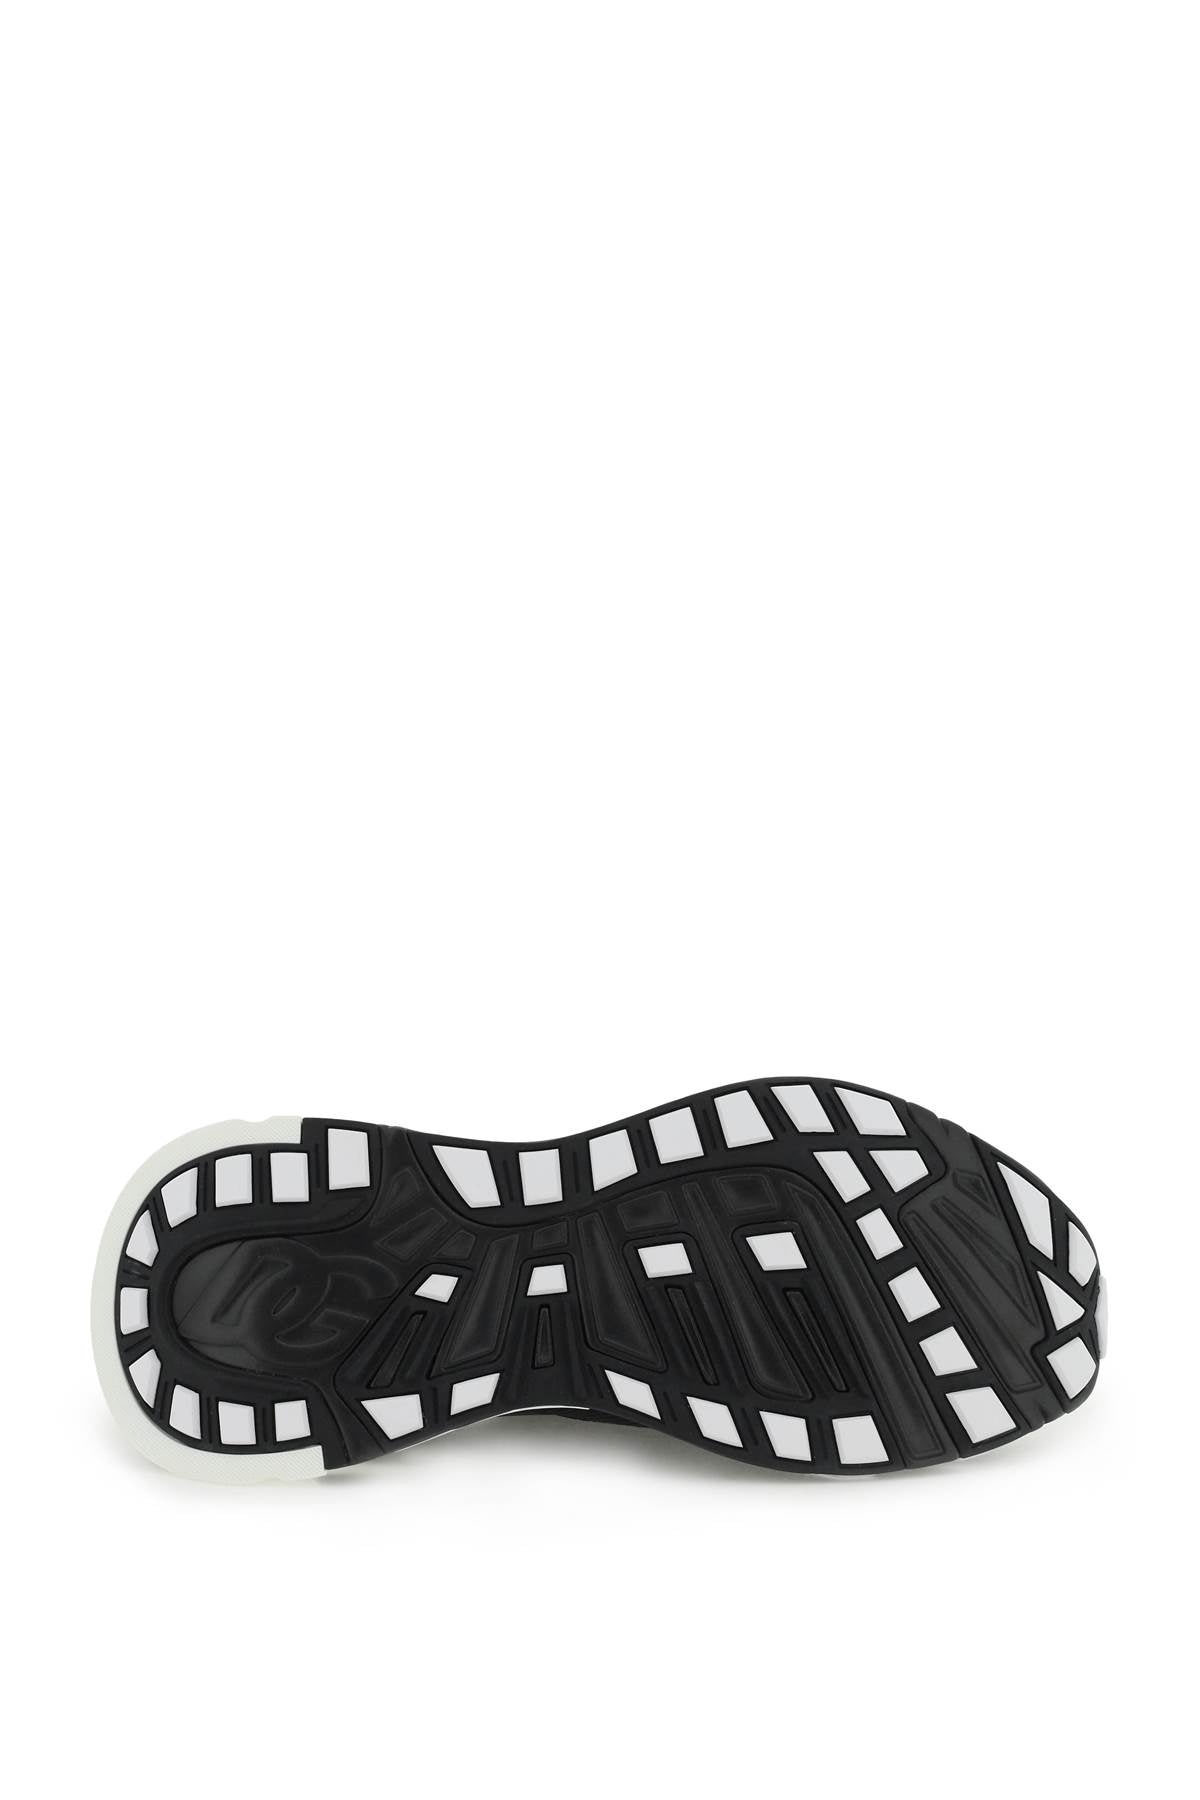 Shop Dolce & Gabbana Sorrento Sneakers In White, Black